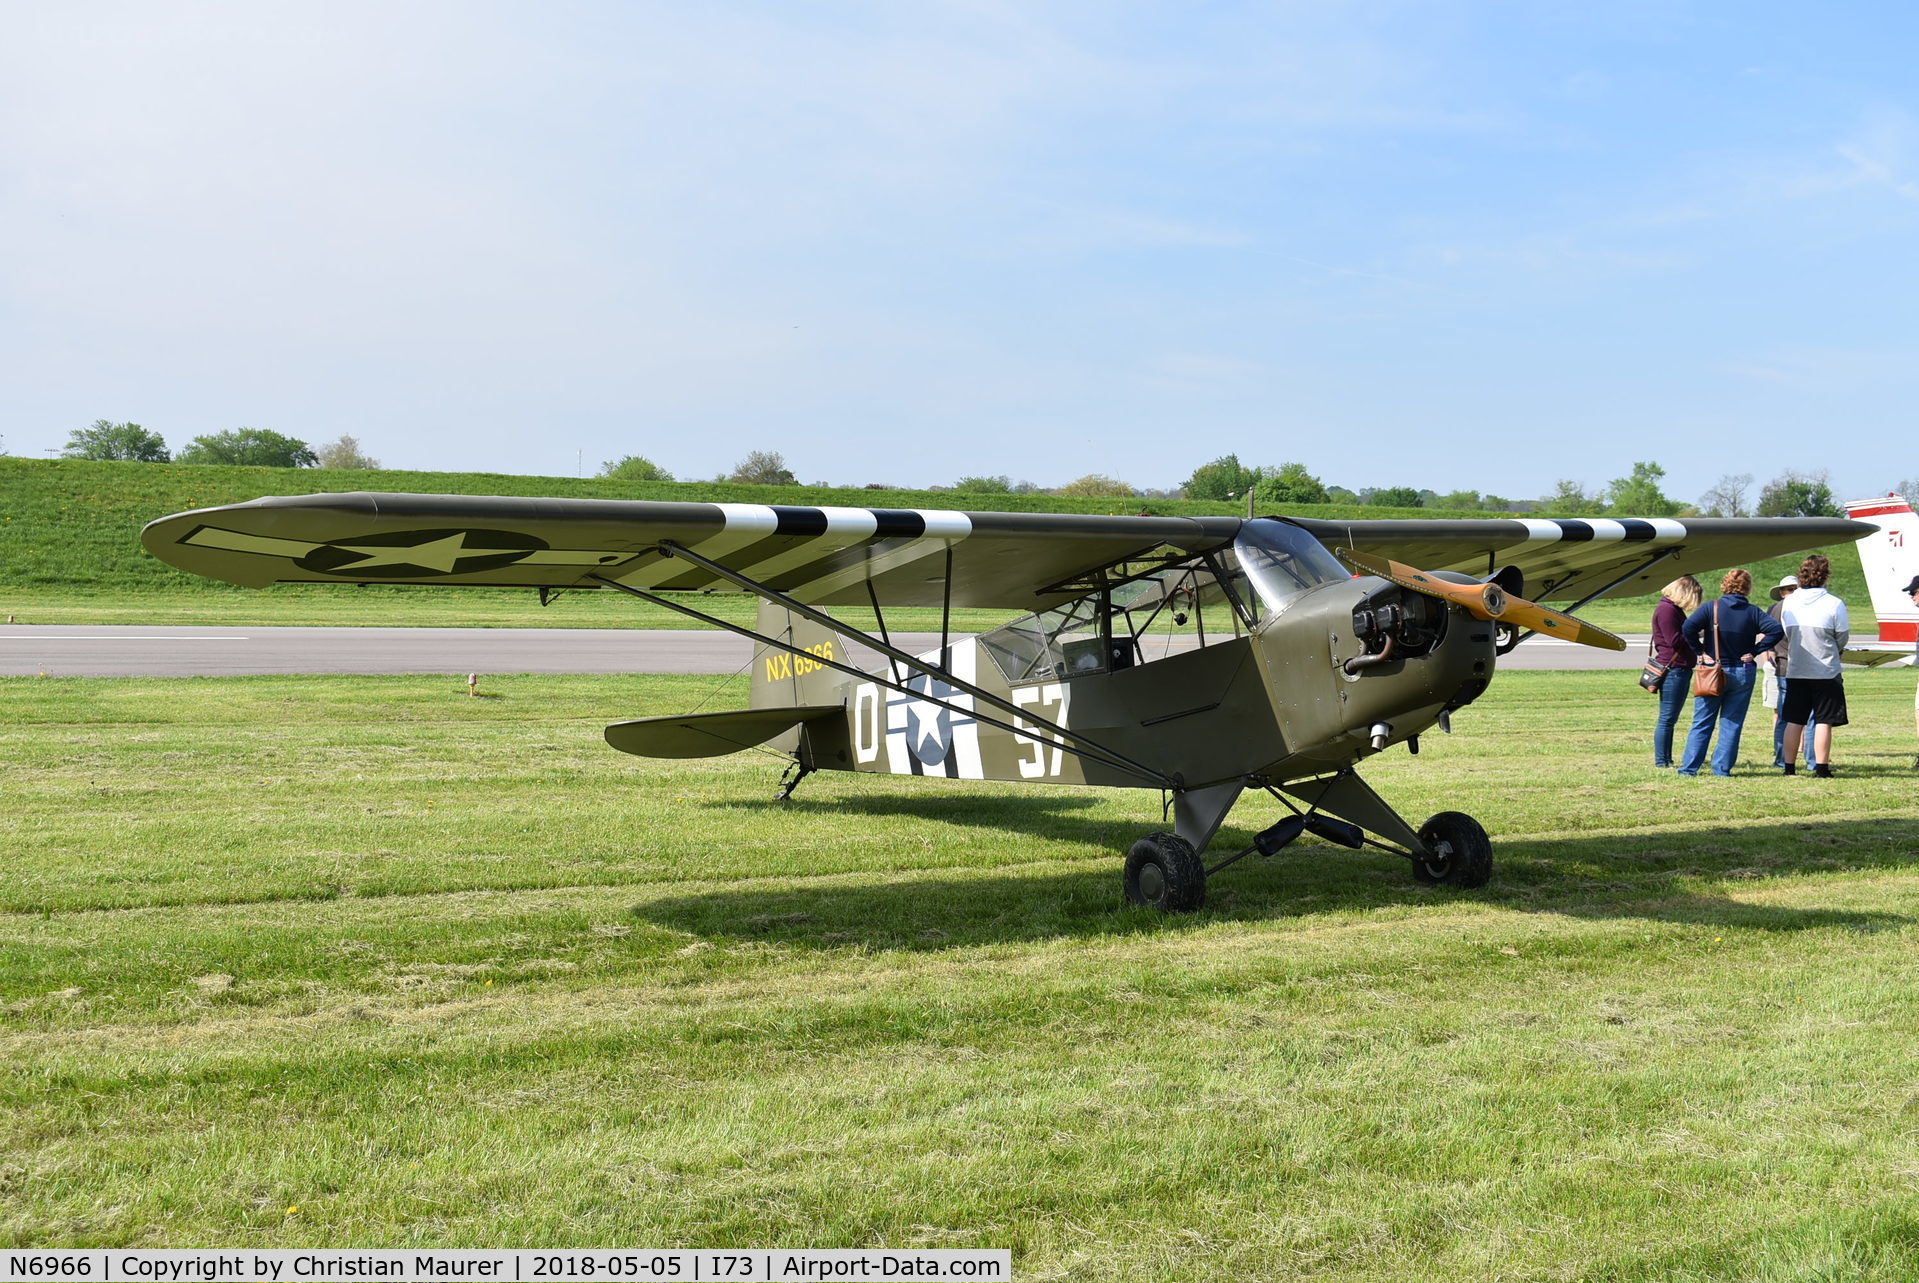 N6966, 2000 Wag-Aero Sport Trainer C/N 3533, Wag Aero Trainer - a look alike L-4 grasshopper